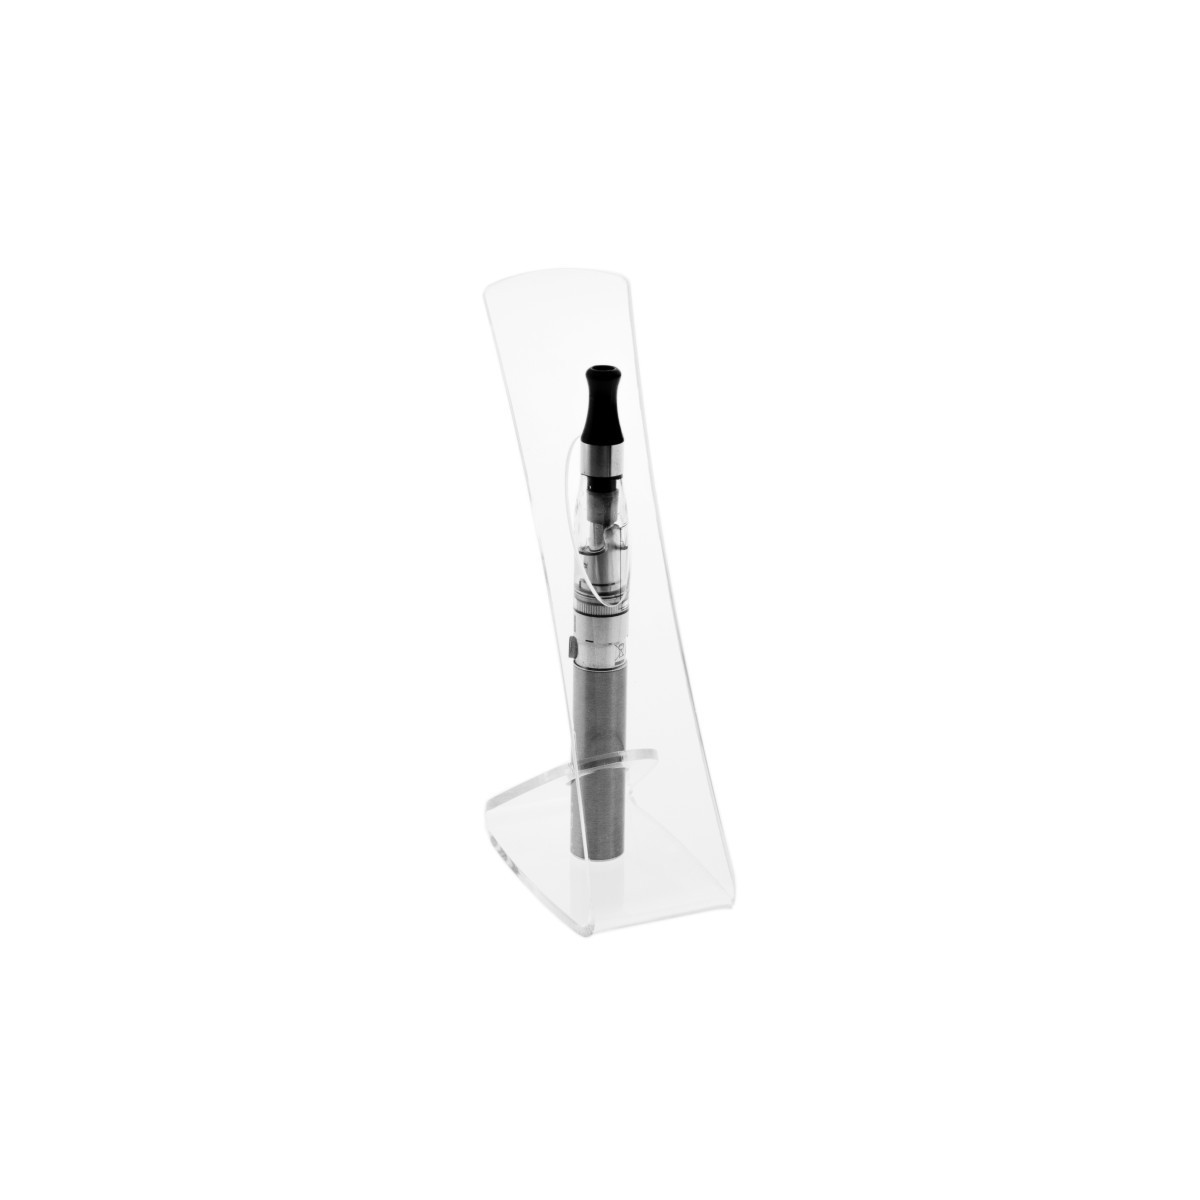 E-093 PSE-C - Porta sigaretta elettronica da banco in plexiglass trasparente- Misure: 5 x 9 x H15 cm